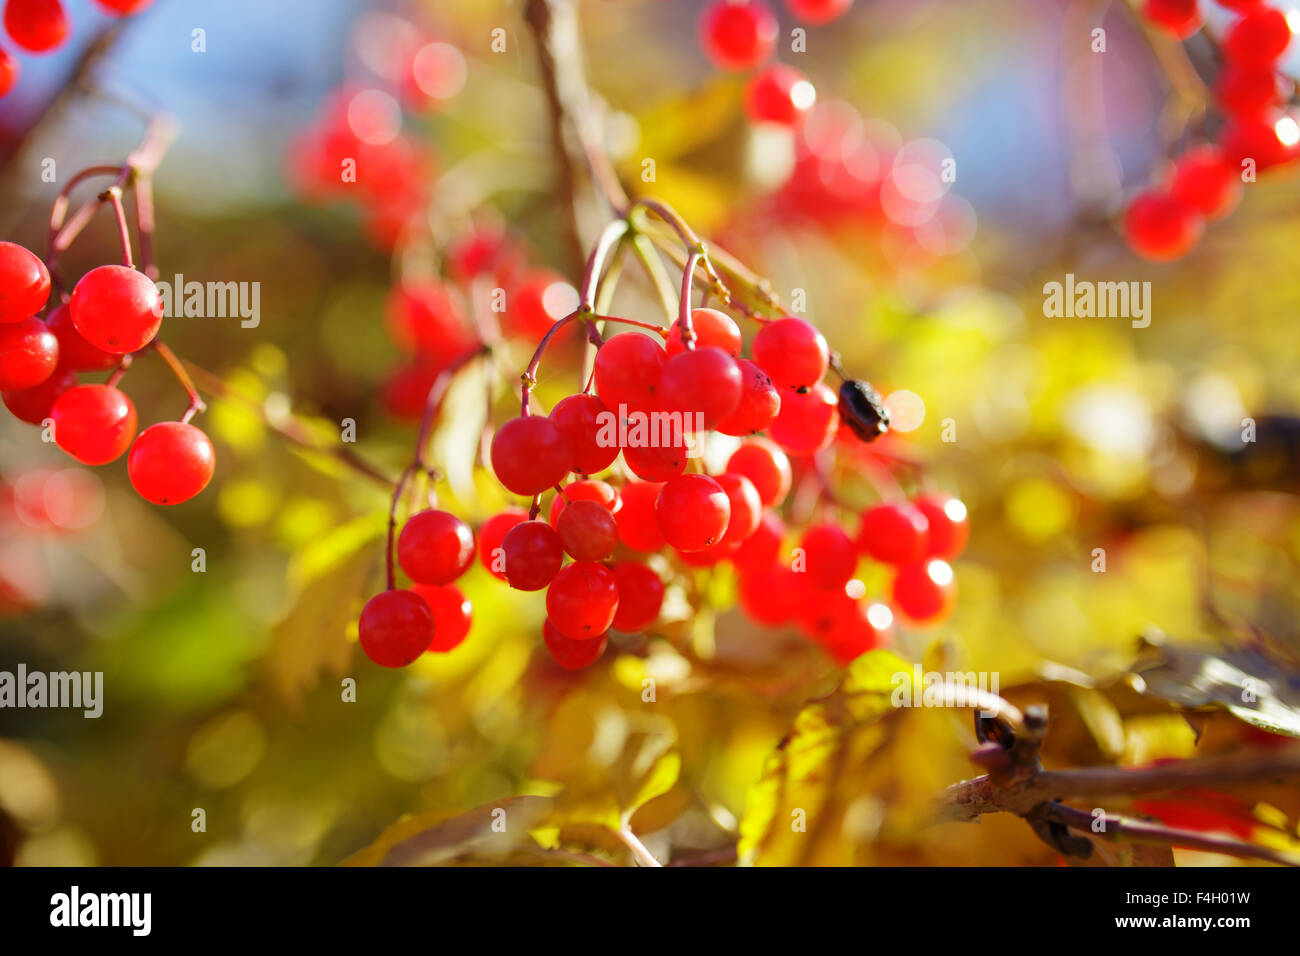 Les baies de la Viorne rouge dans l'arbre, automne fond Banque D'Images